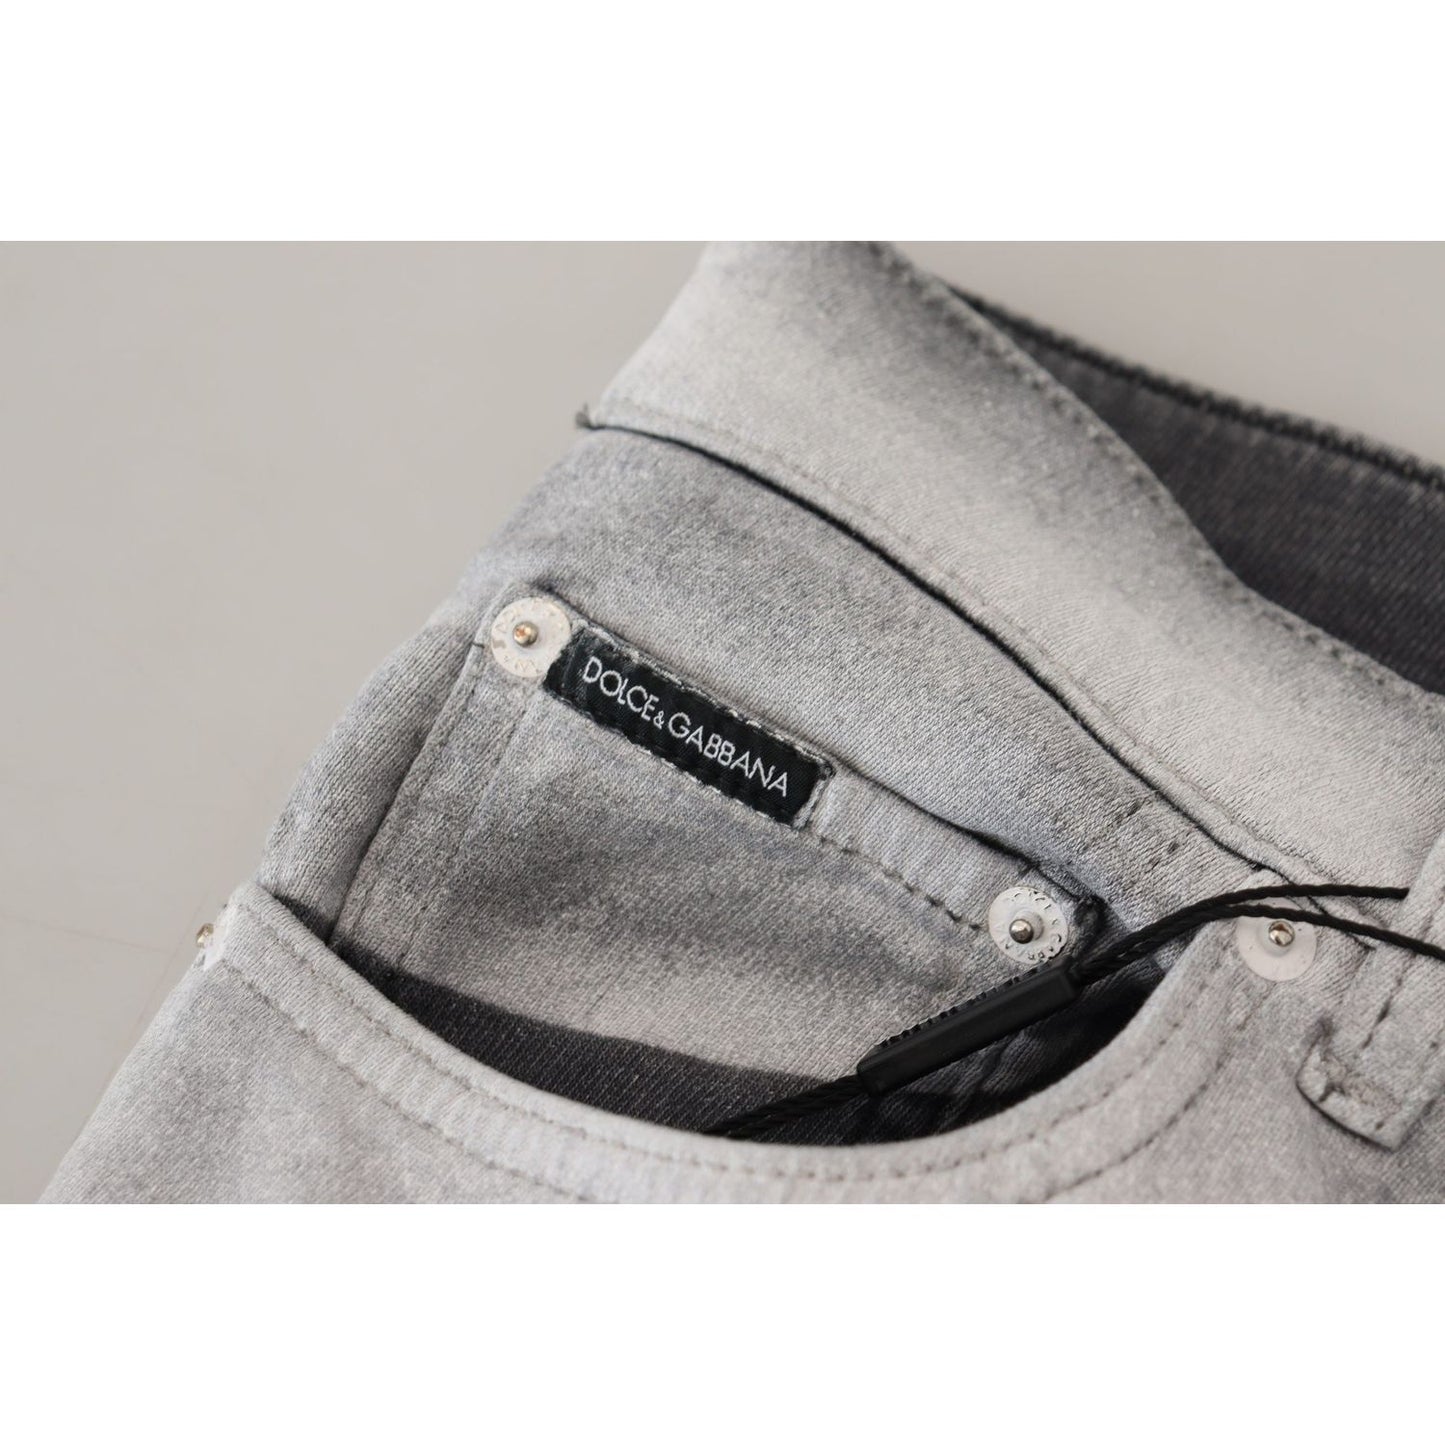 Dolce & GabbanaElegant Gray Washed Cotton Blend PantsMcRichard Designer Brands£459.00